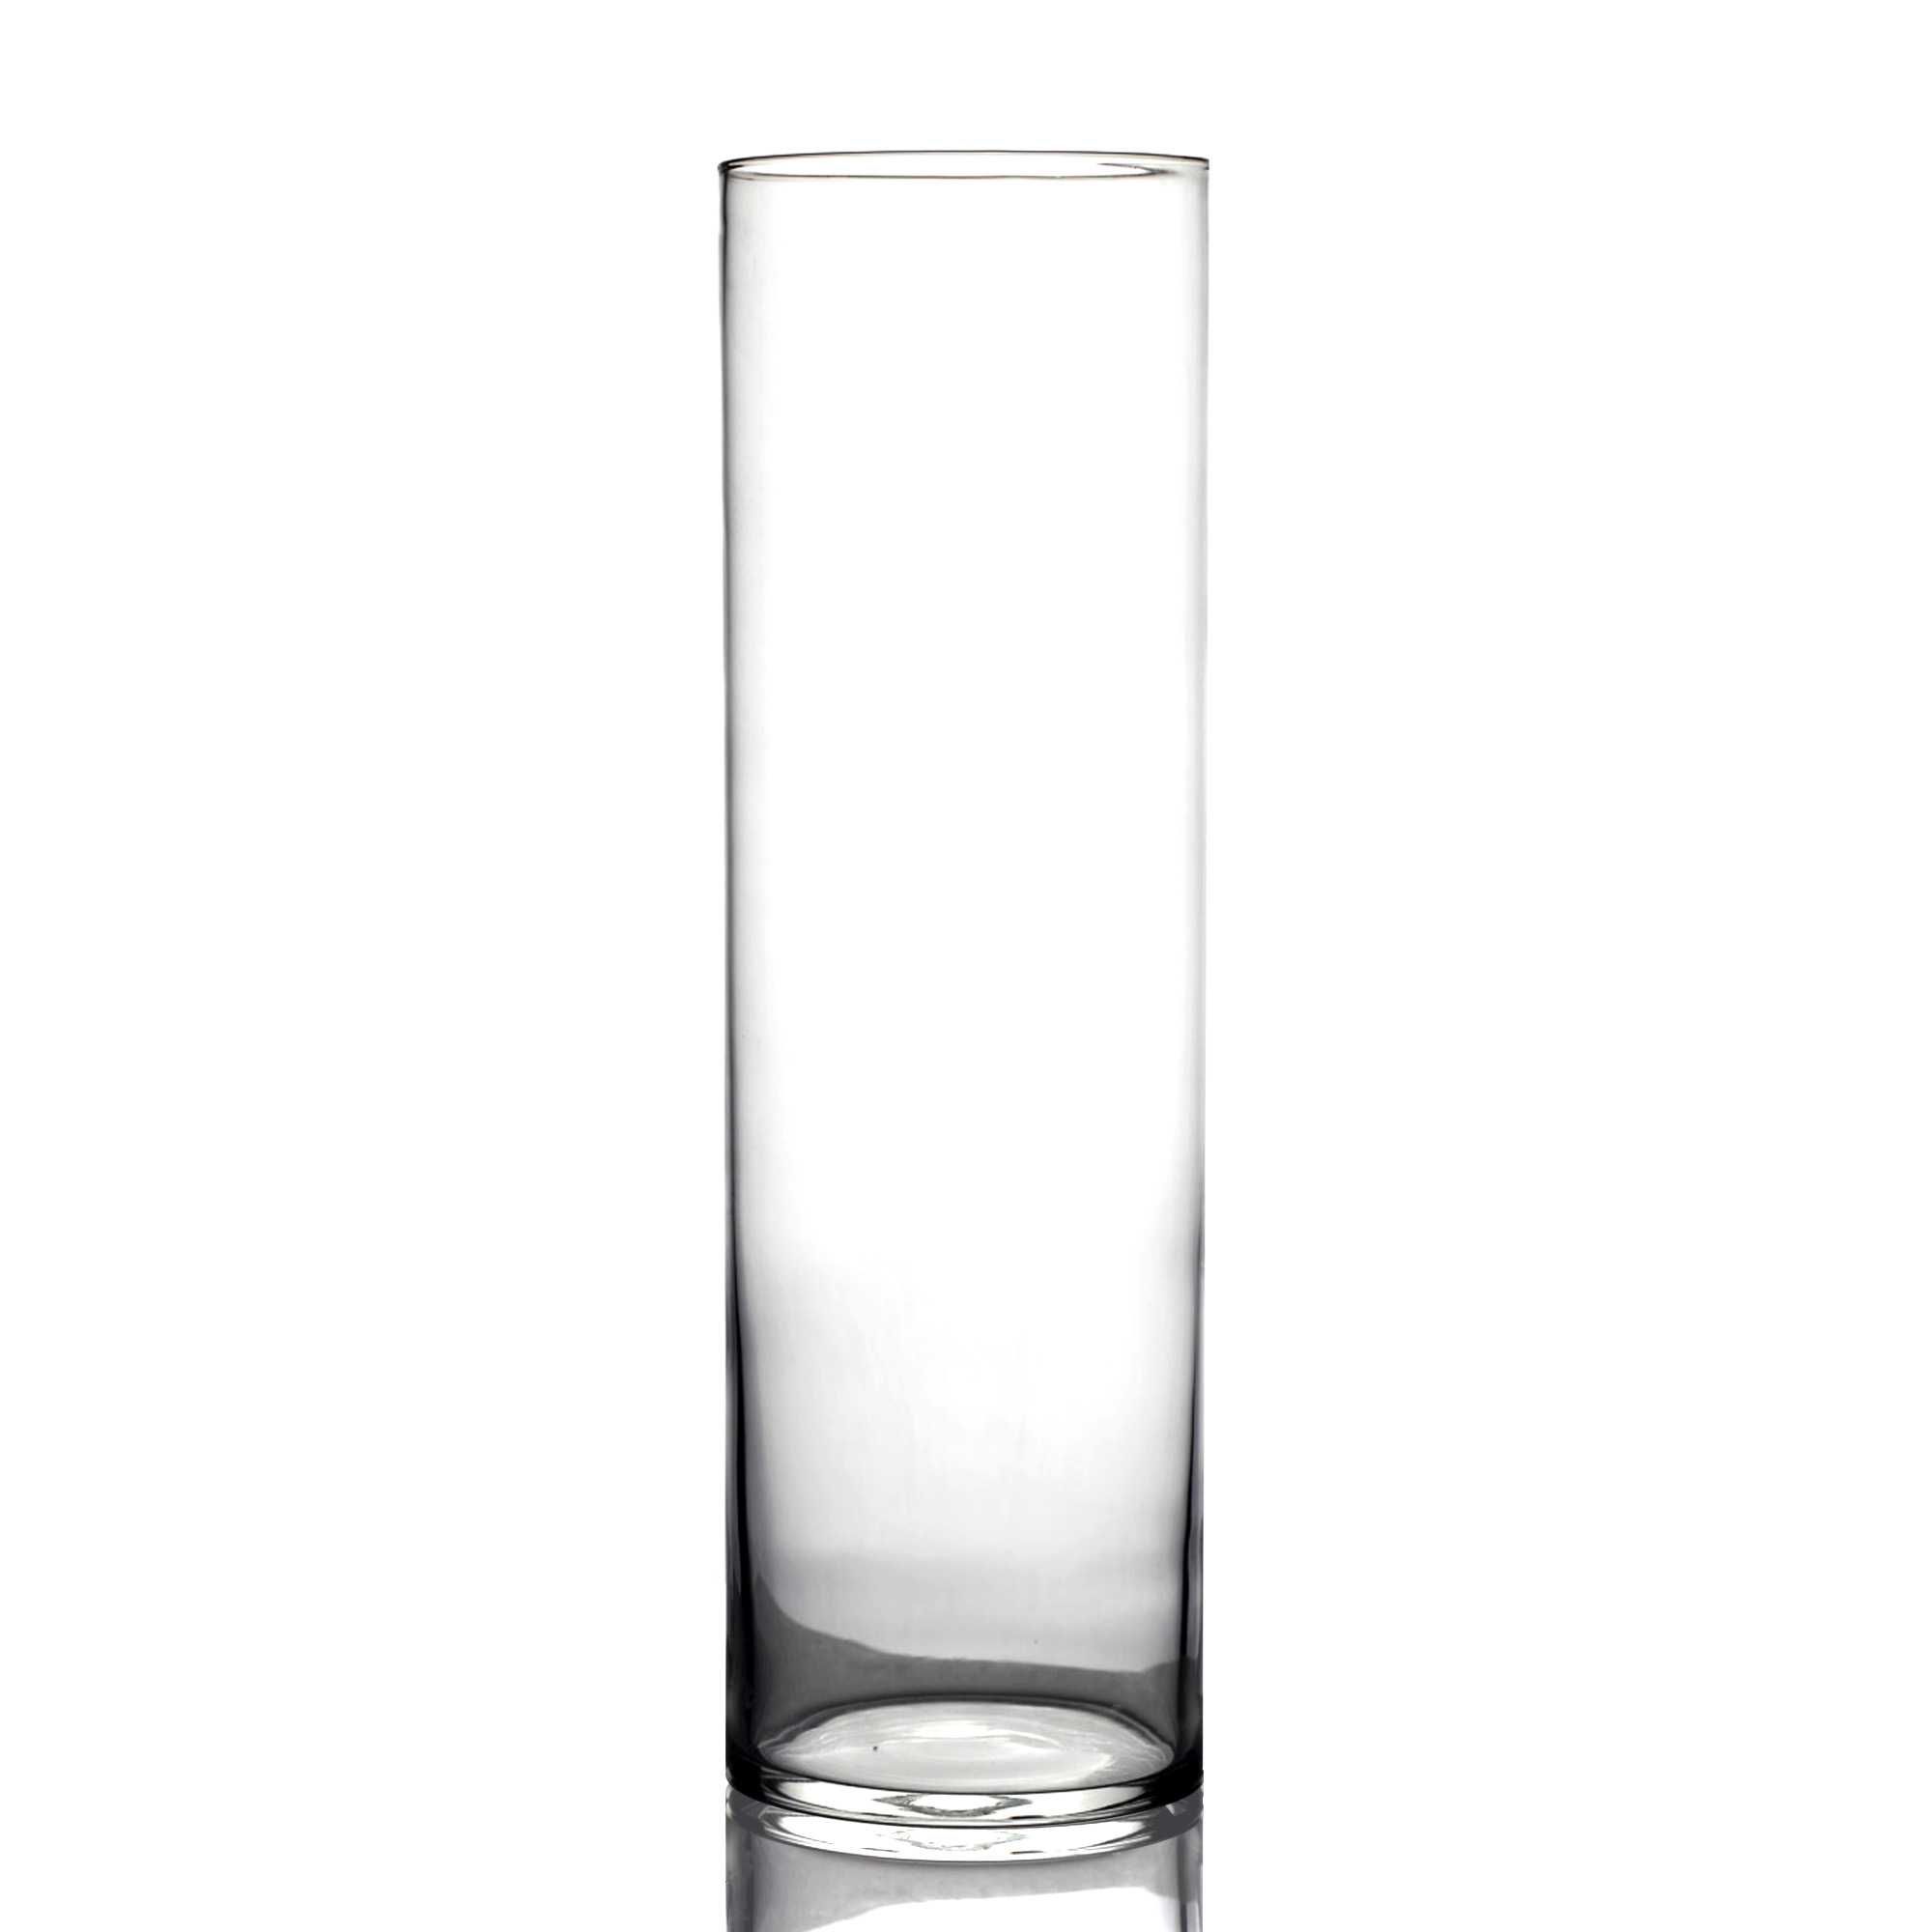 Скляні циліндричні вази від 10 см до 50 см заввишки